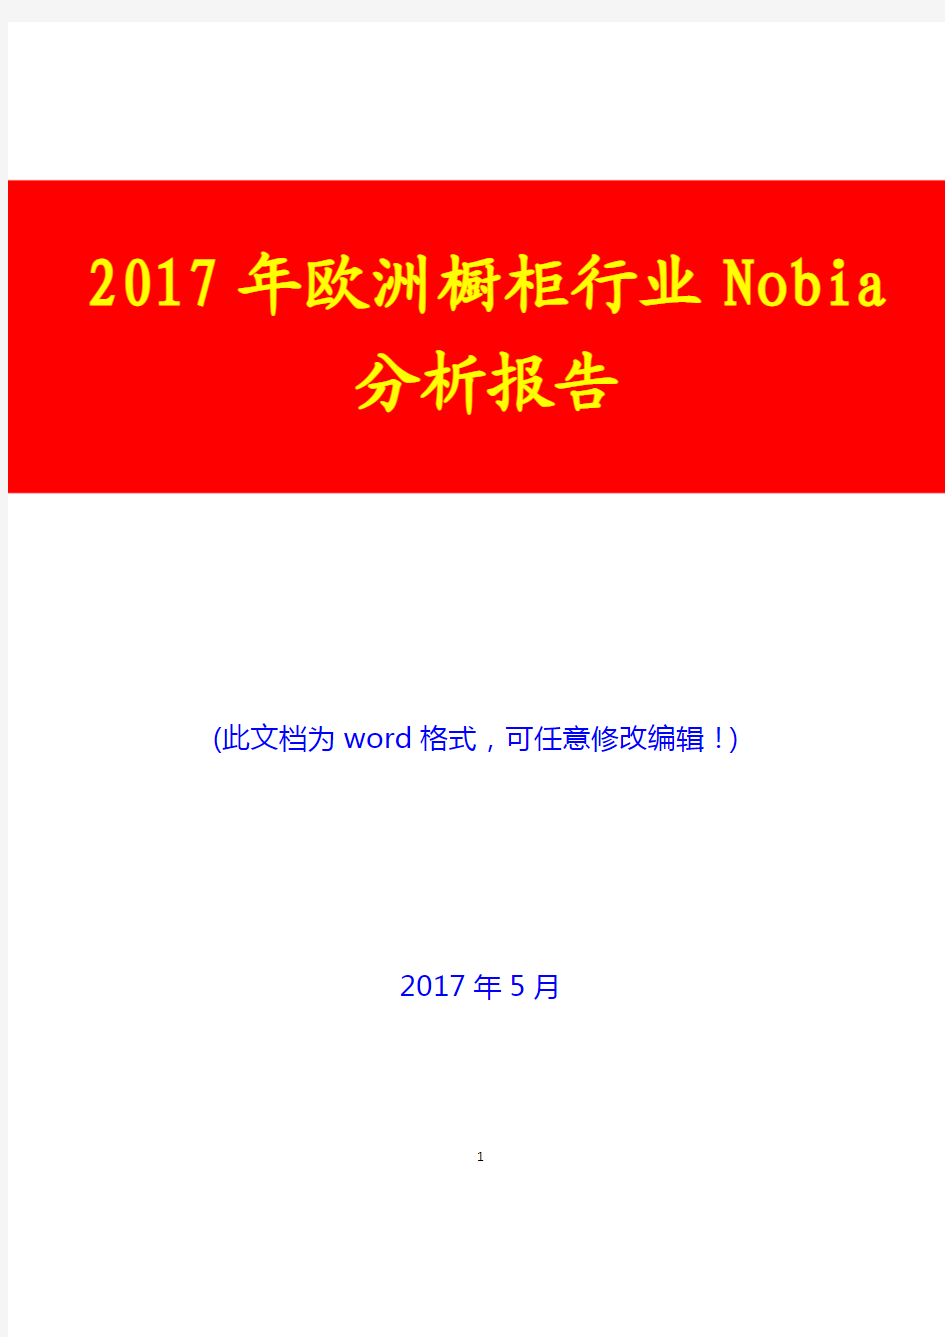 2017年欧洲橱柜行业Nobia分析报告